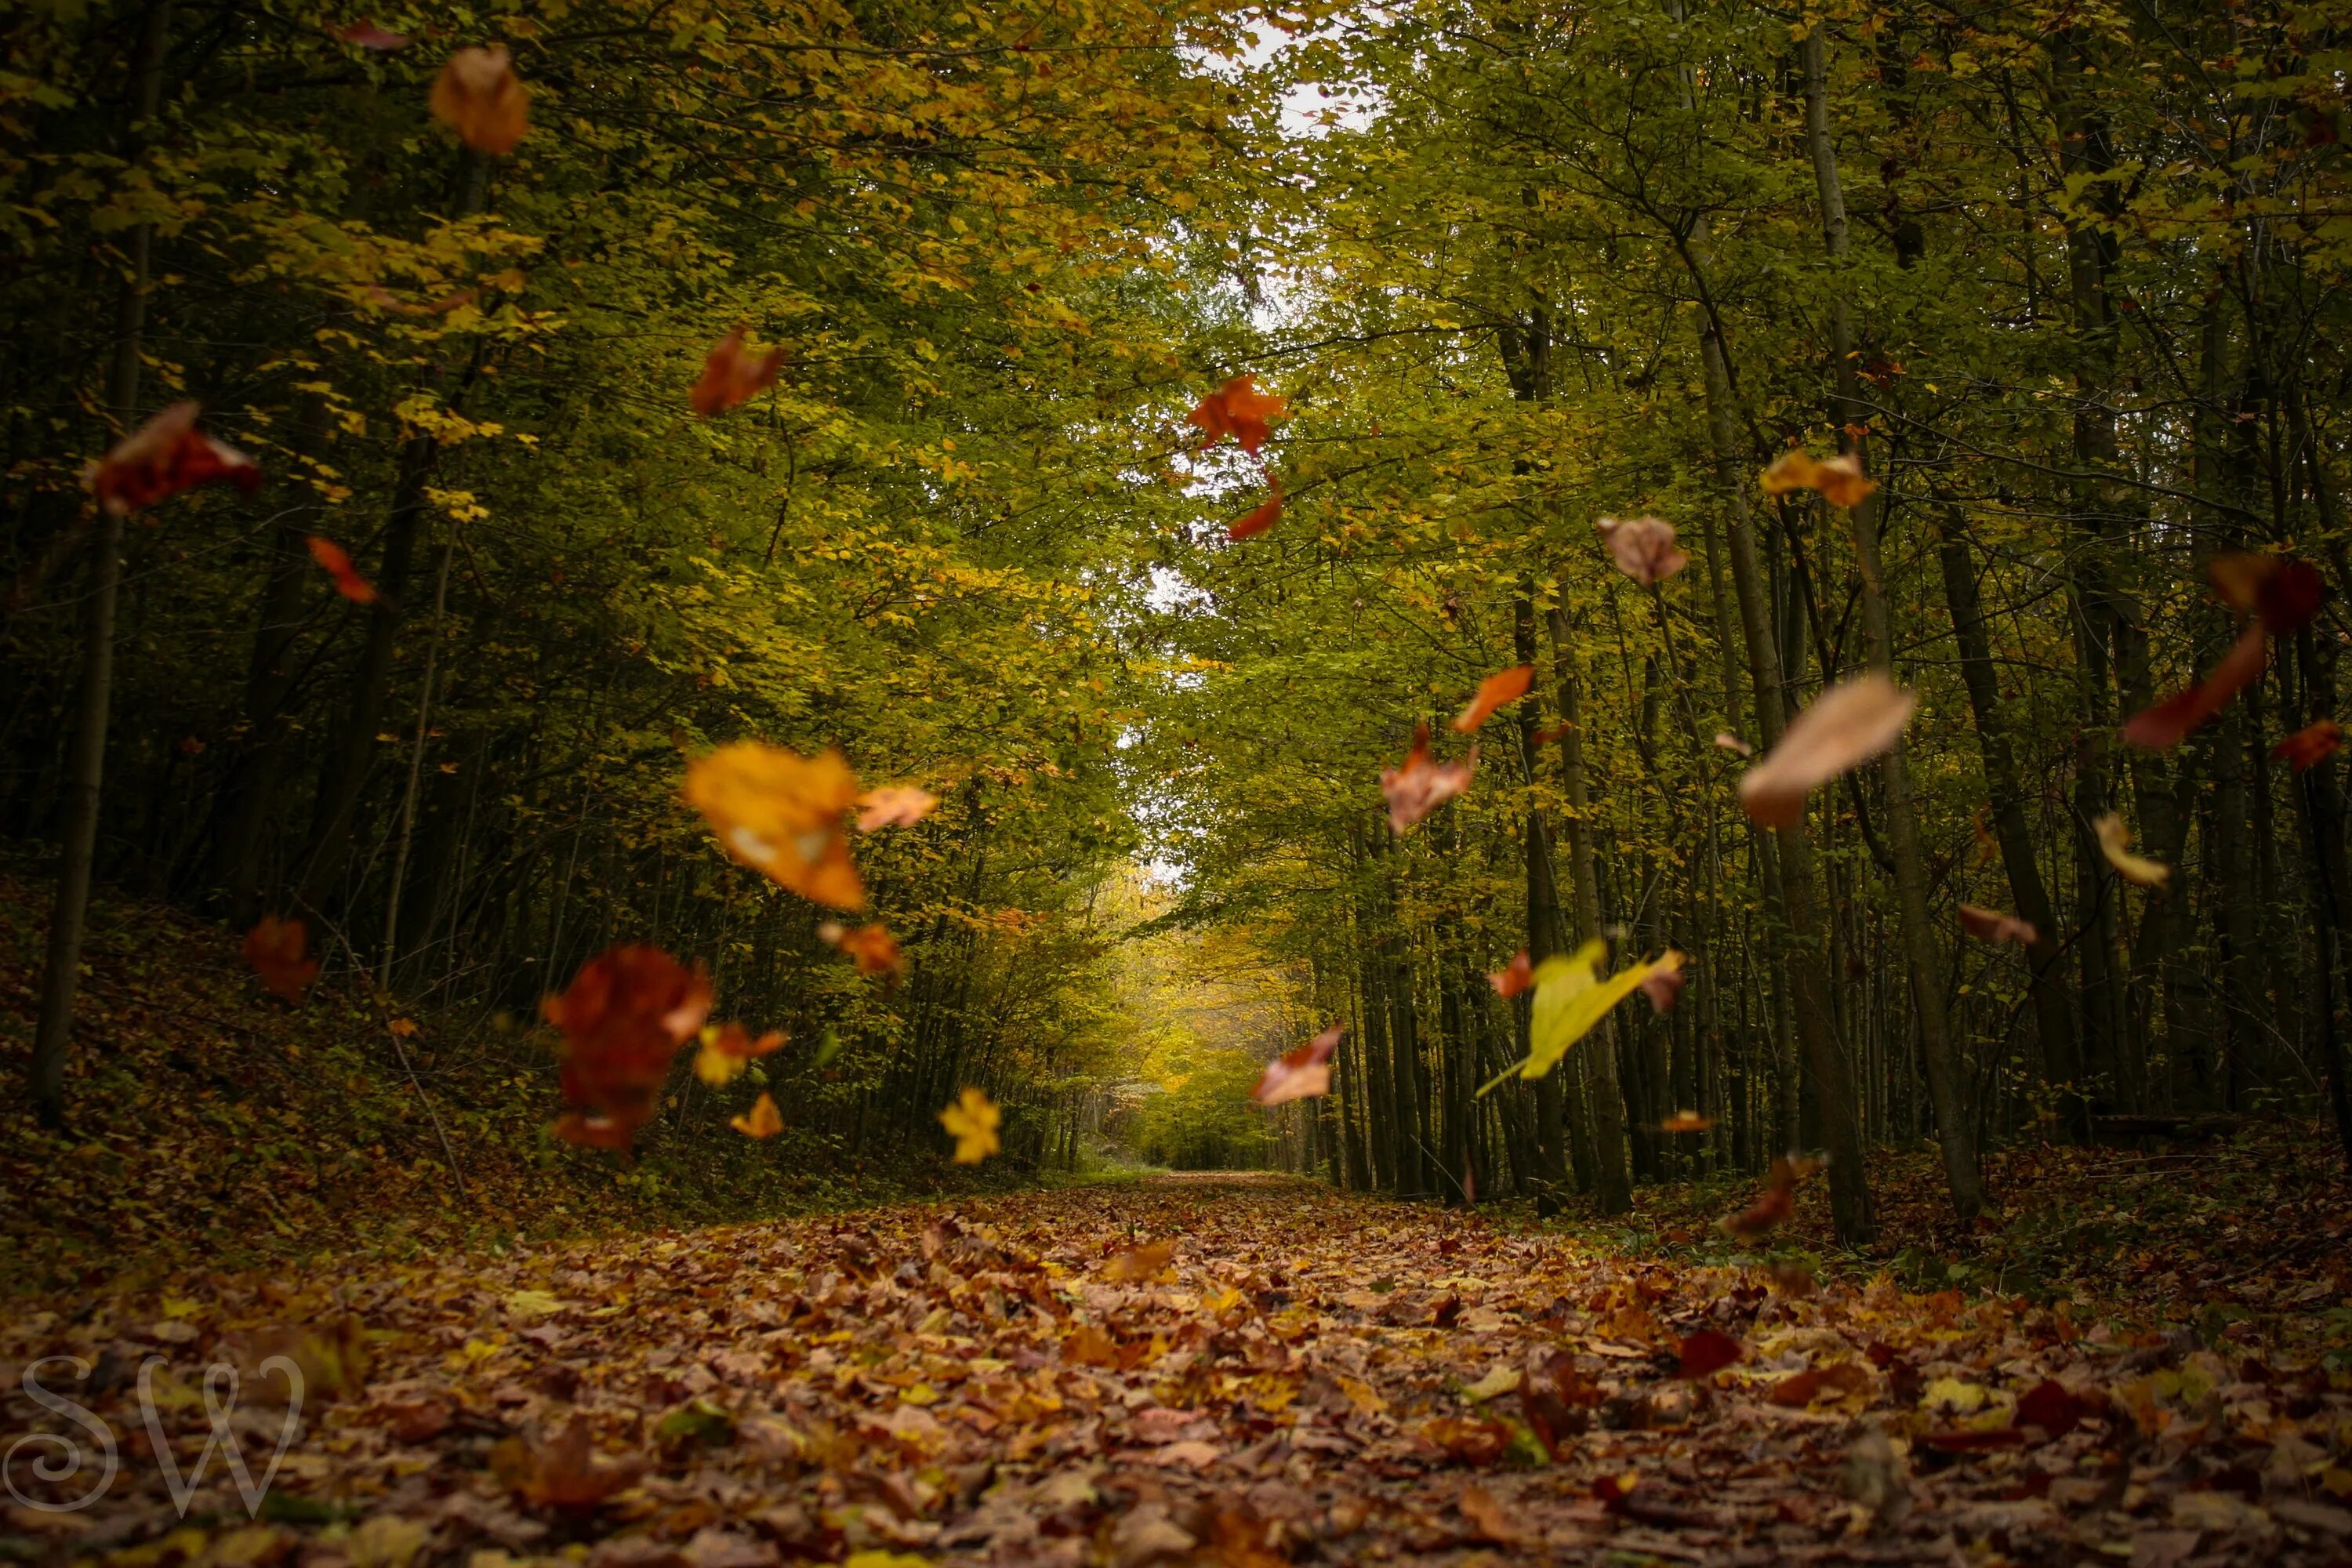 Колышимый ветром лист. Листья кружатся. Ветер в осеннем лесу. Листопад в лесу. Осень листопад.